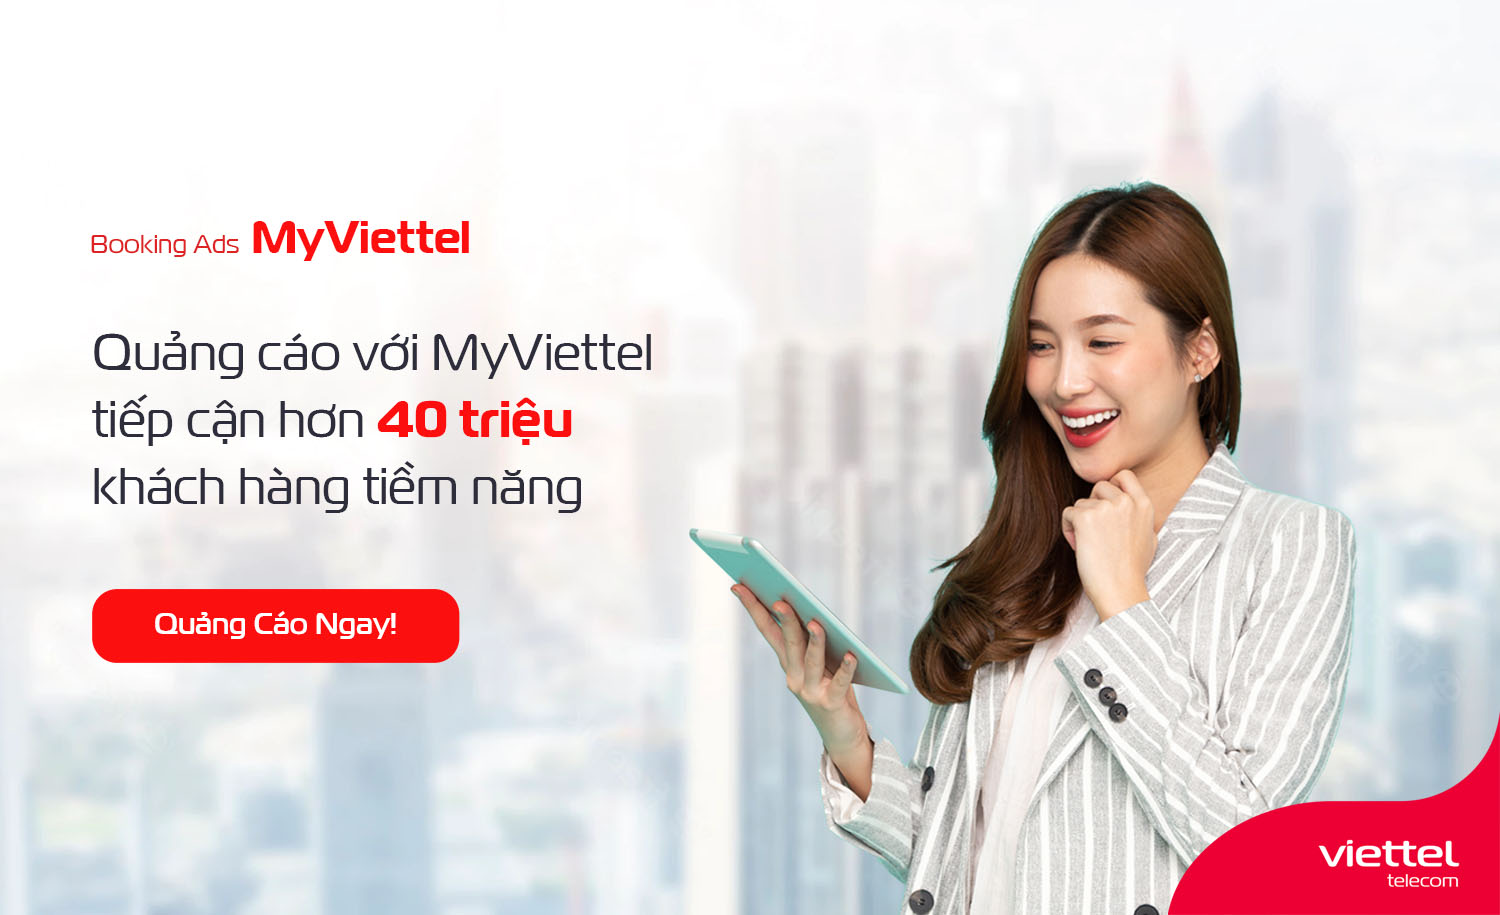 Quảng cáo trên My Viettel: Với My Viettel, việc quảng cáo sản phẩm, dịch vụ của bạn trở nên dễ dàng và mang lại hiệu quả cao. Khách hàng của Viettel là đối tượng sử dụng di động chiếm tỷ lệ cao, đông đảo và tích cực sử dụng các dịch vụ của họ. Hãy lựa chọn quảng cáo trên My Viettel để đưa sản phẩm đến càng nhiều khách hàng tiềm năng.